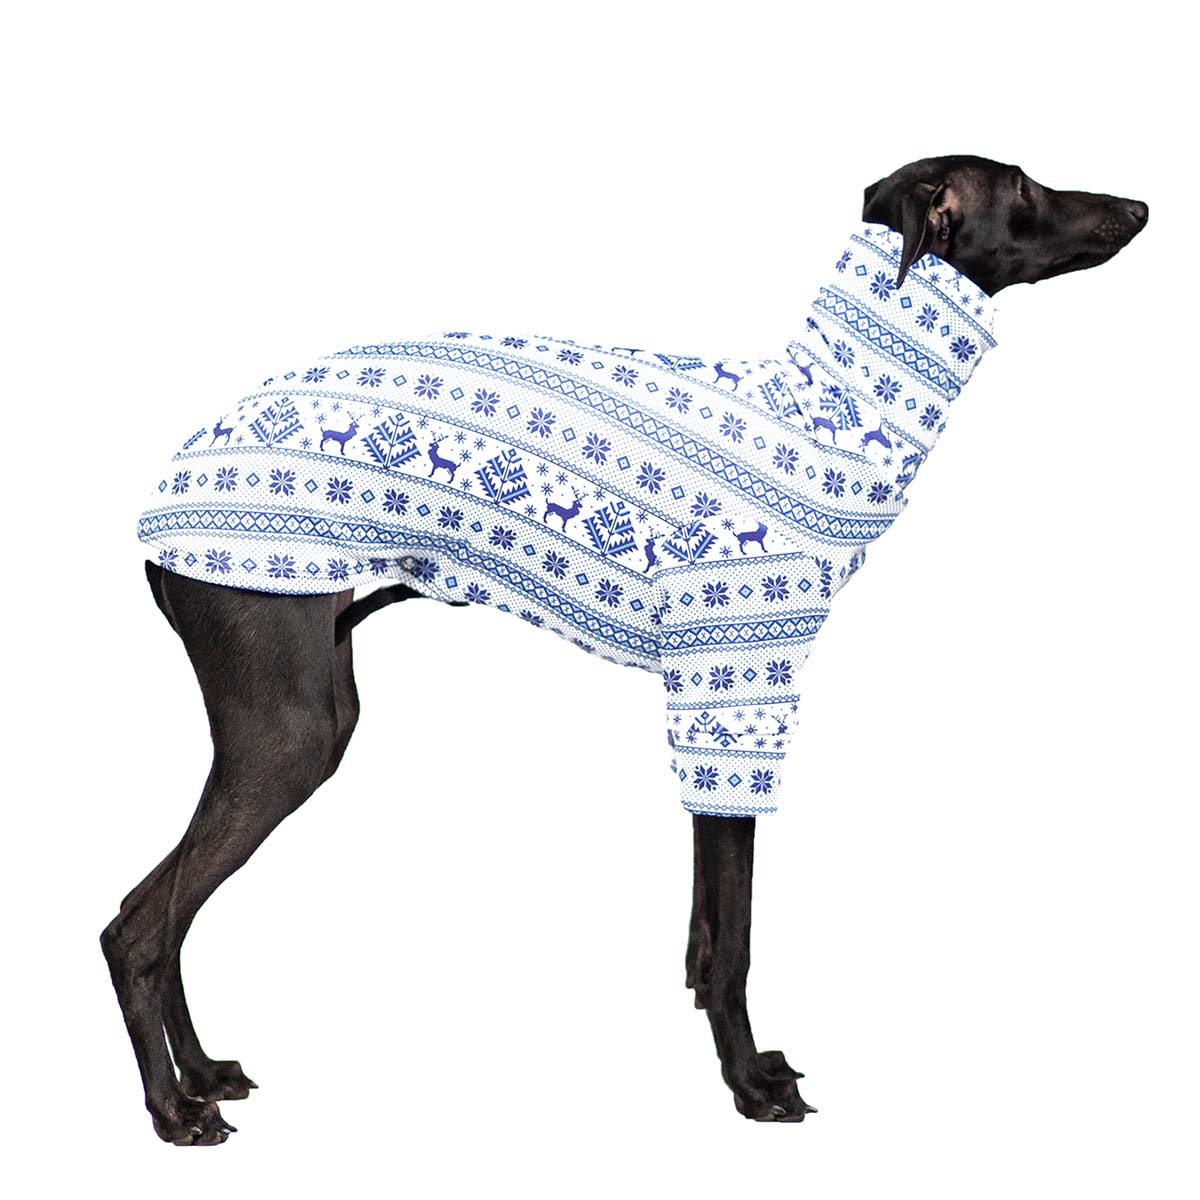 Italian greyhound clothing ARCTIC NORTH blouse image 2